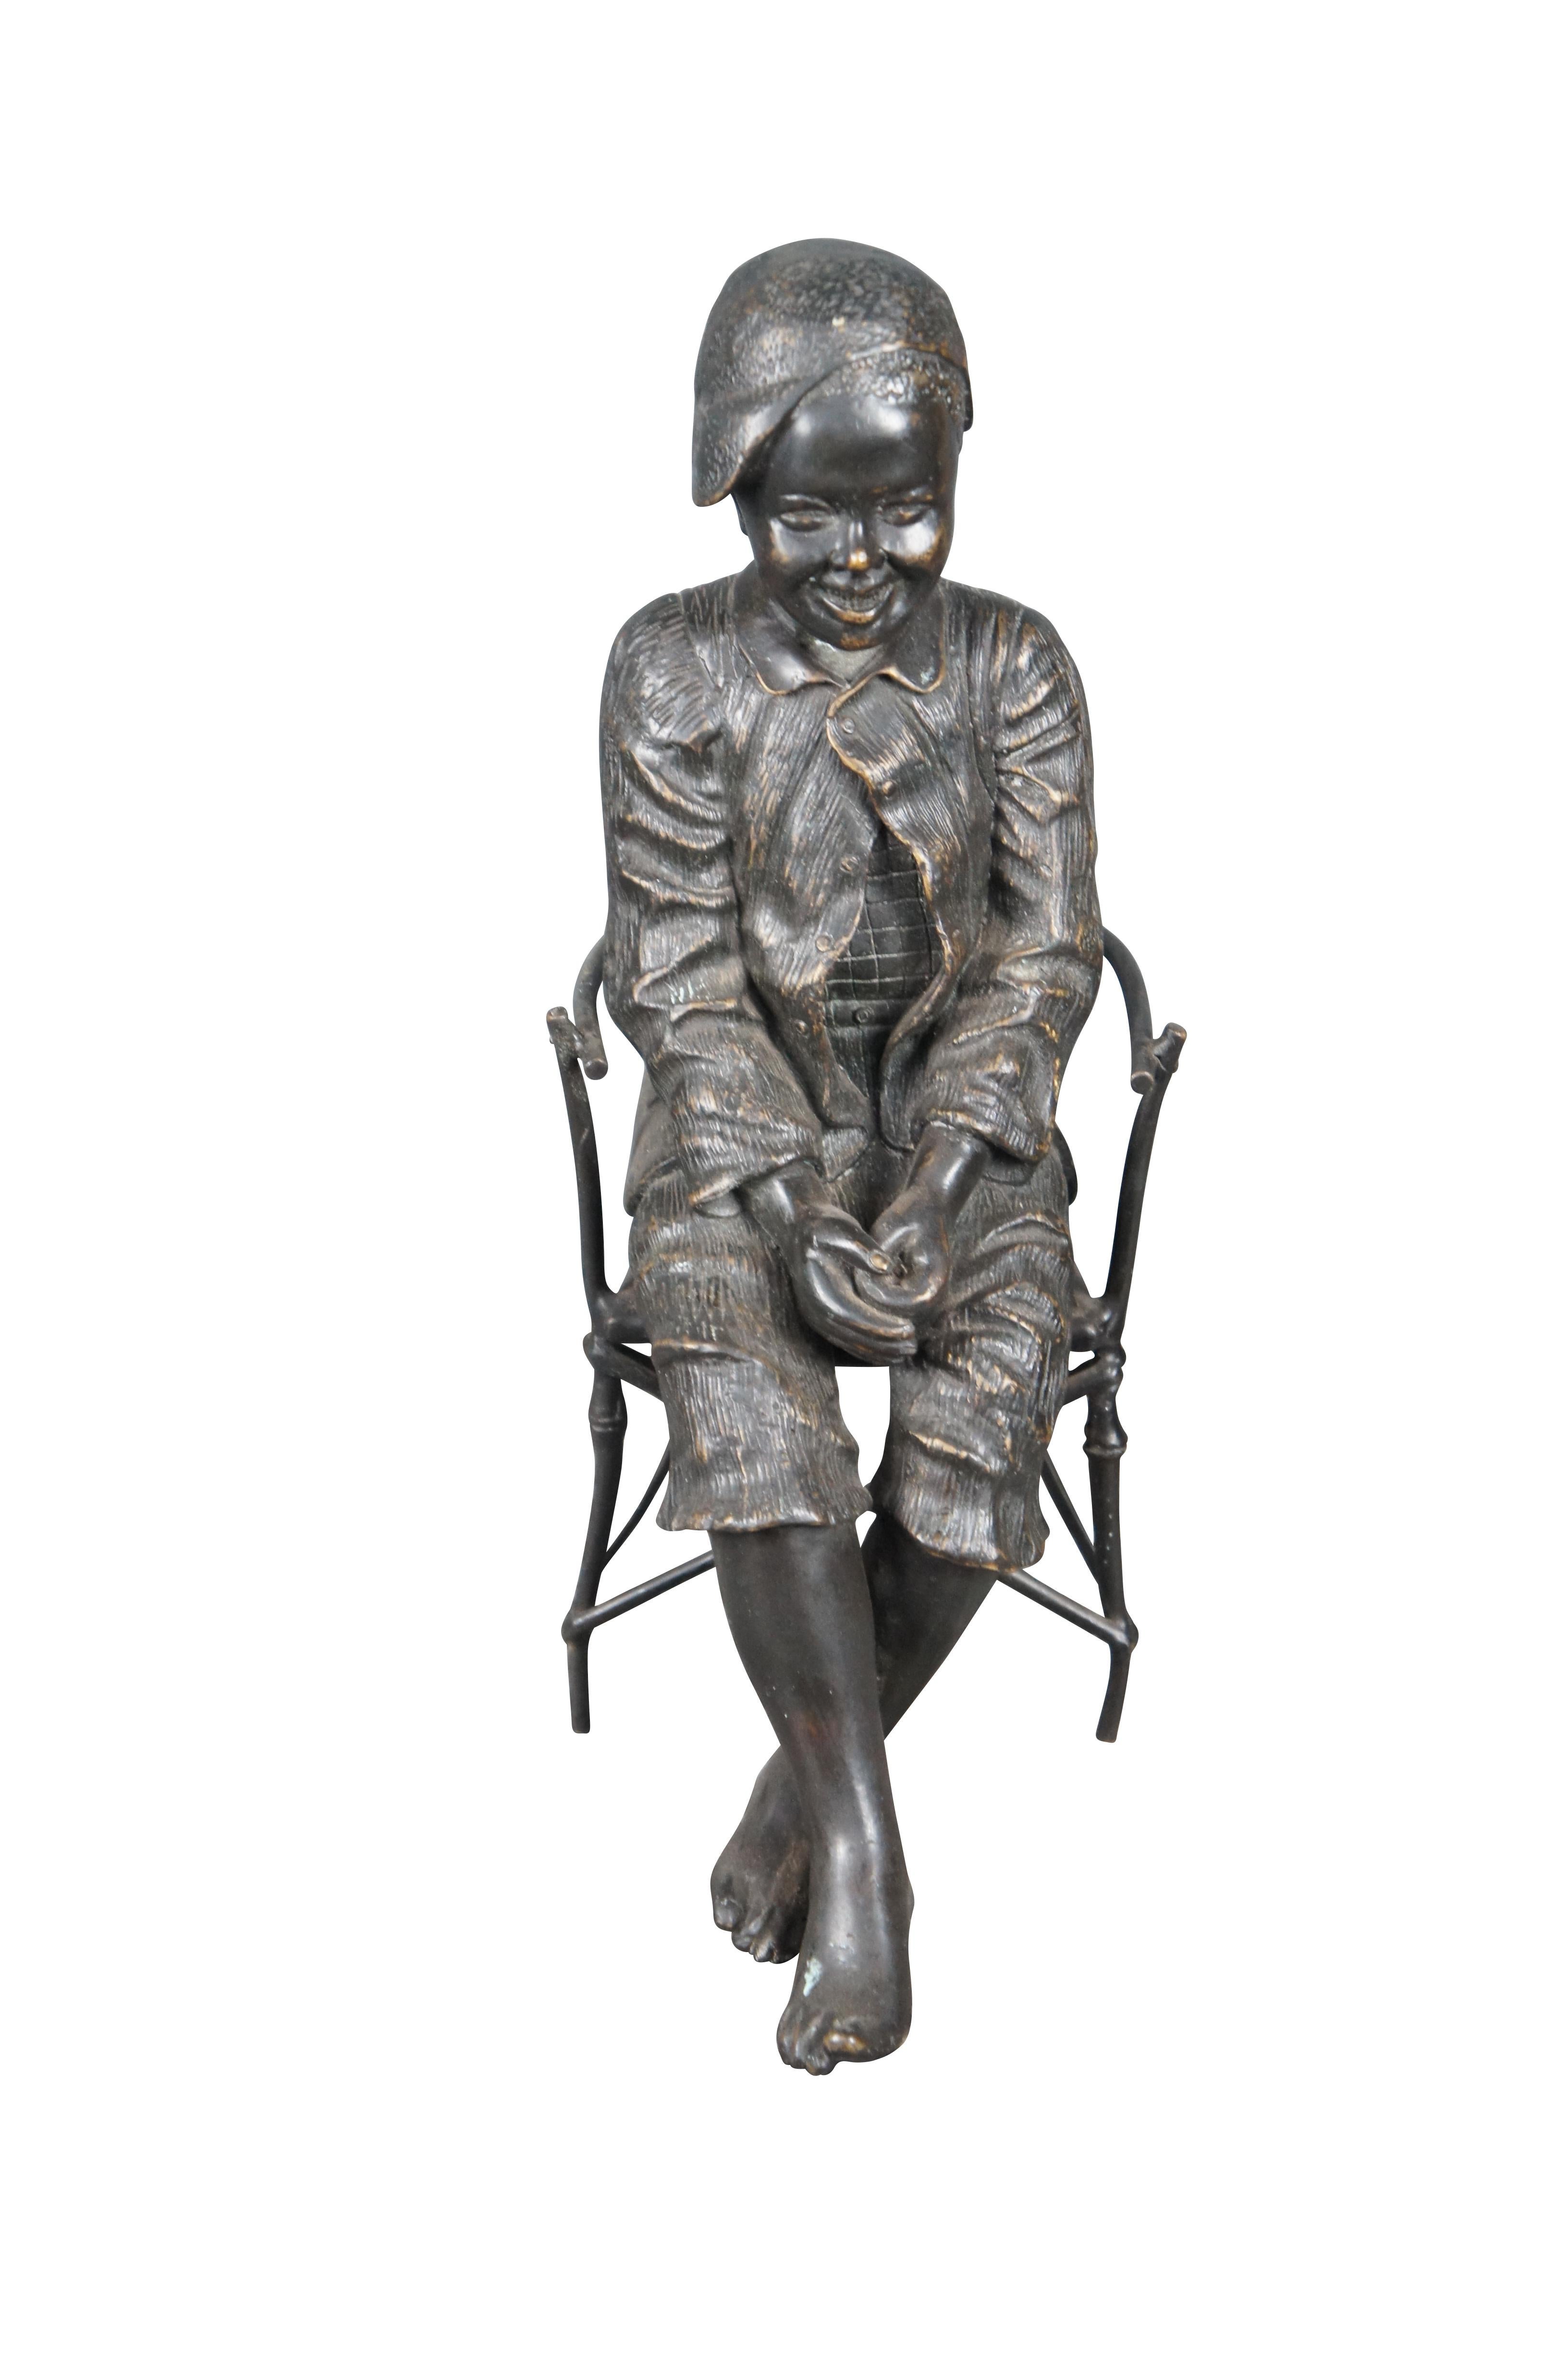 La statue en bronze du garçon pêcheur est une sculpture ancienne du sculpteur et potier autrichien Friedrich Goldscheider. Elle représente un jeune garçon en train de pêcher dans une scène de genre. La sculpture originale est en terre cuite et date